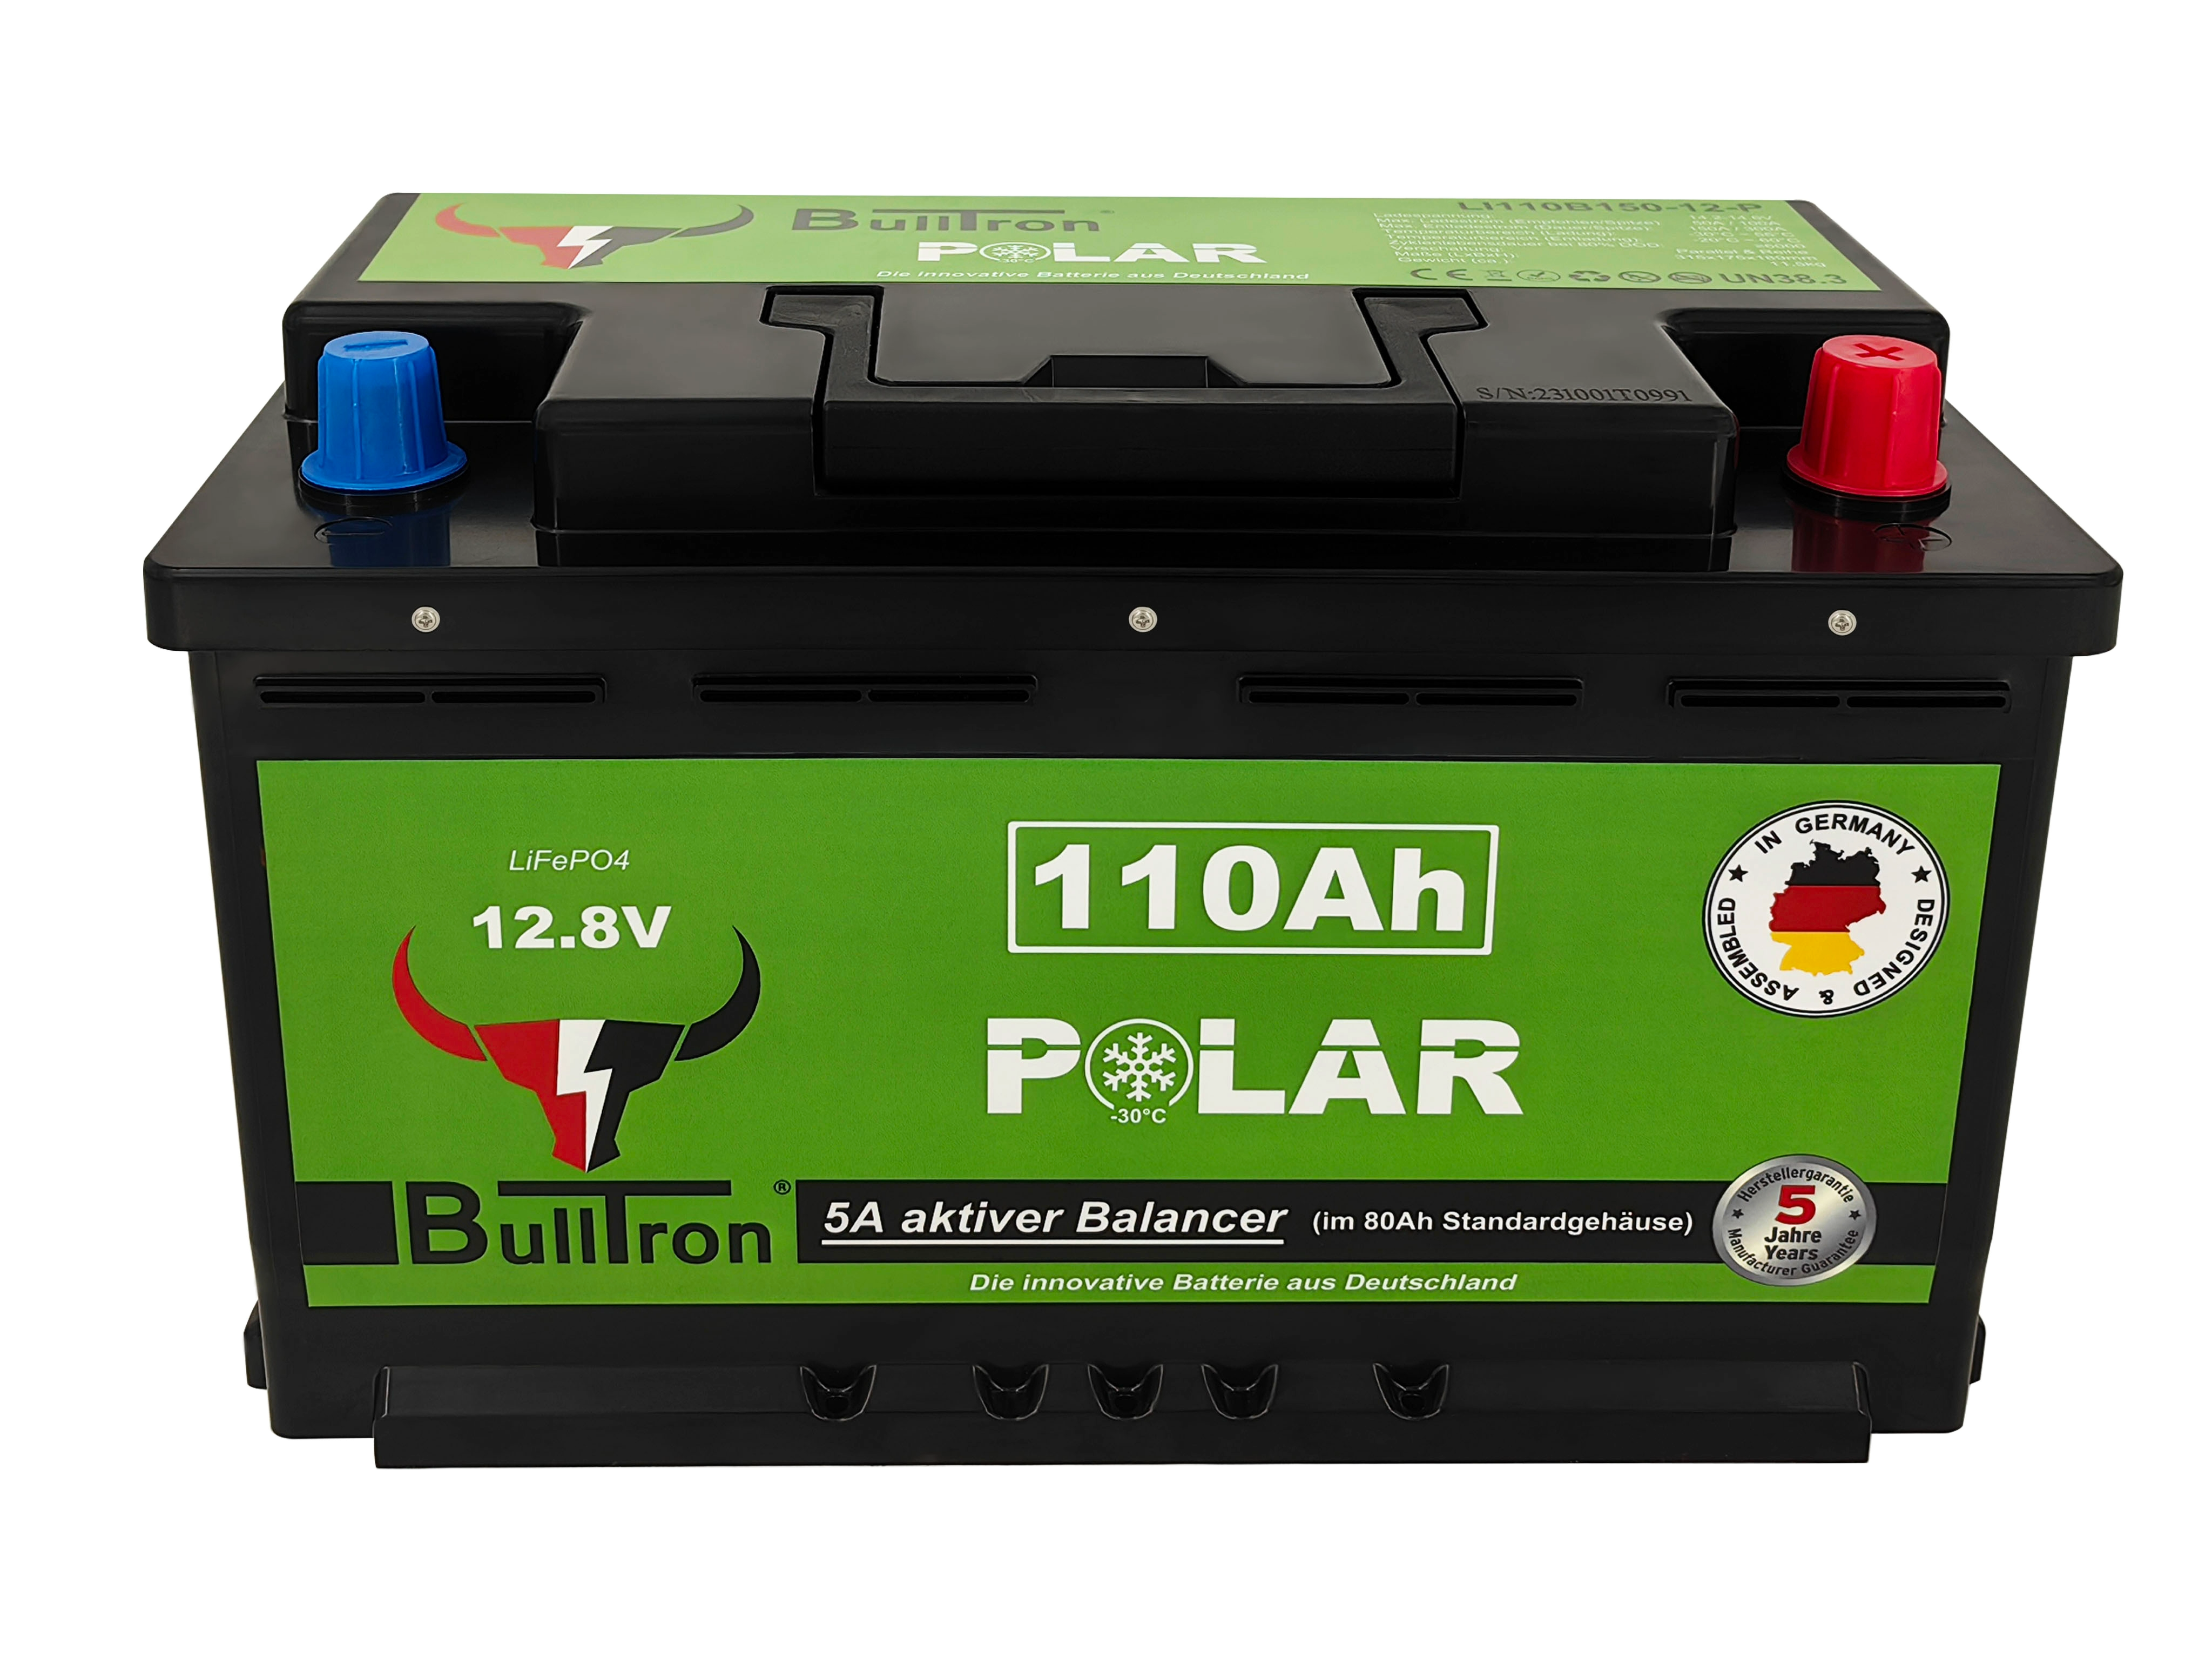 Bulltron 110Ah Polar inkl. Smart BMS mit 150A Dauerstrom, Bluetooth App und Heizung